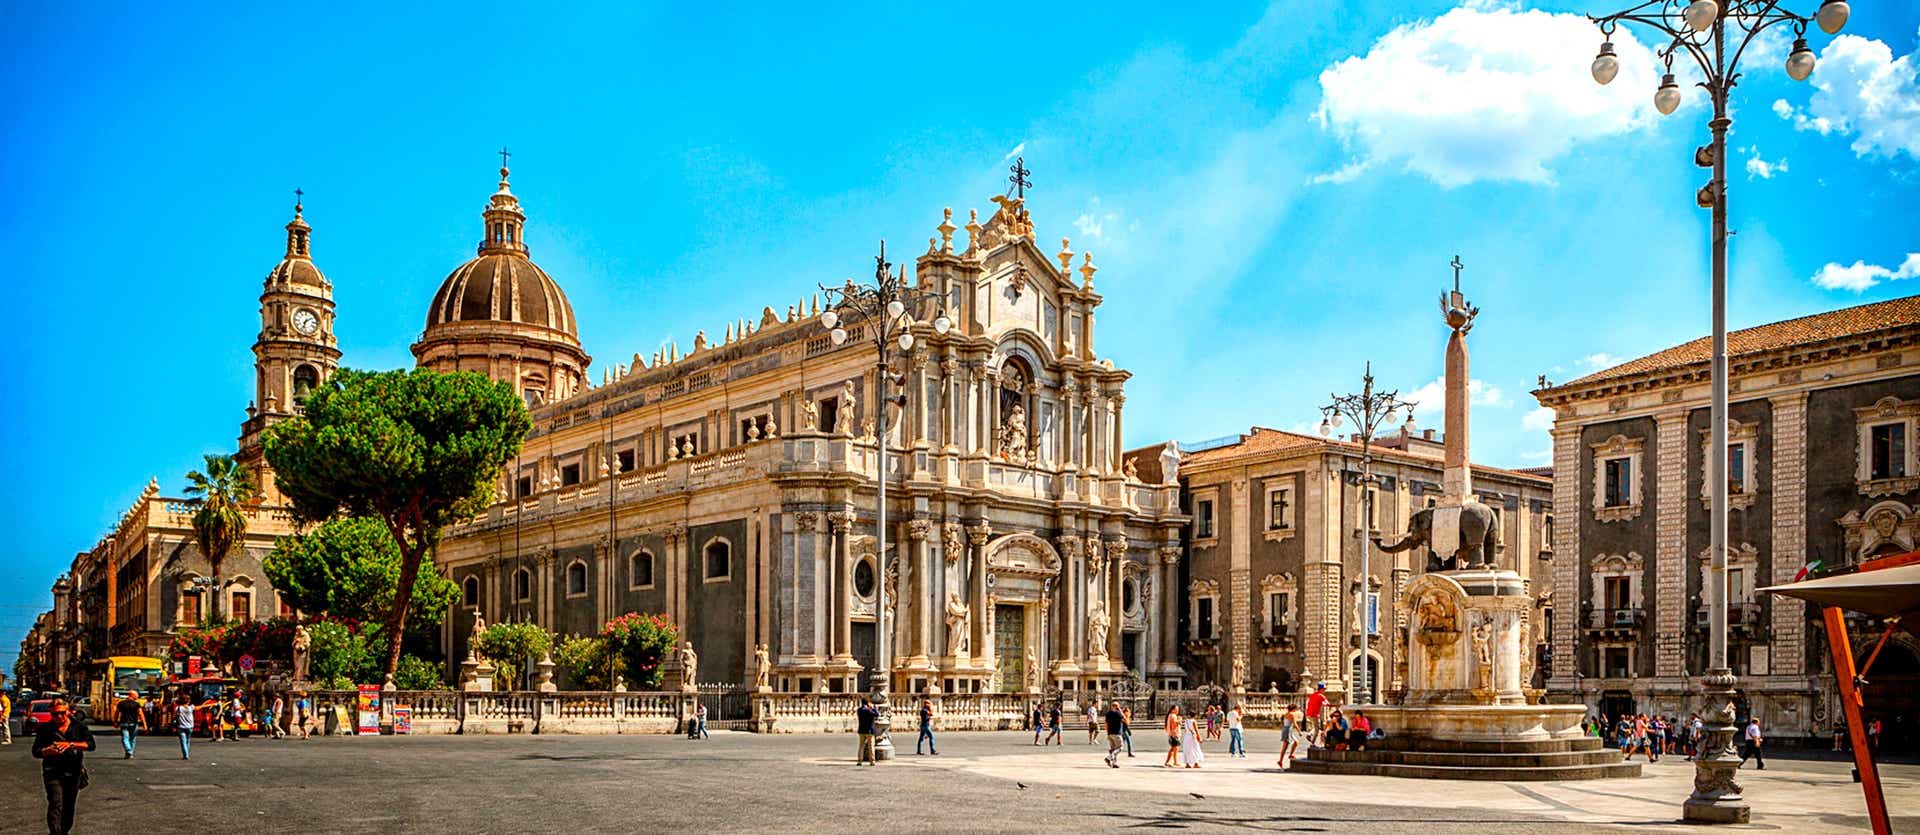 Catania Cathedral <span class="iconos separador"></span> Sicily